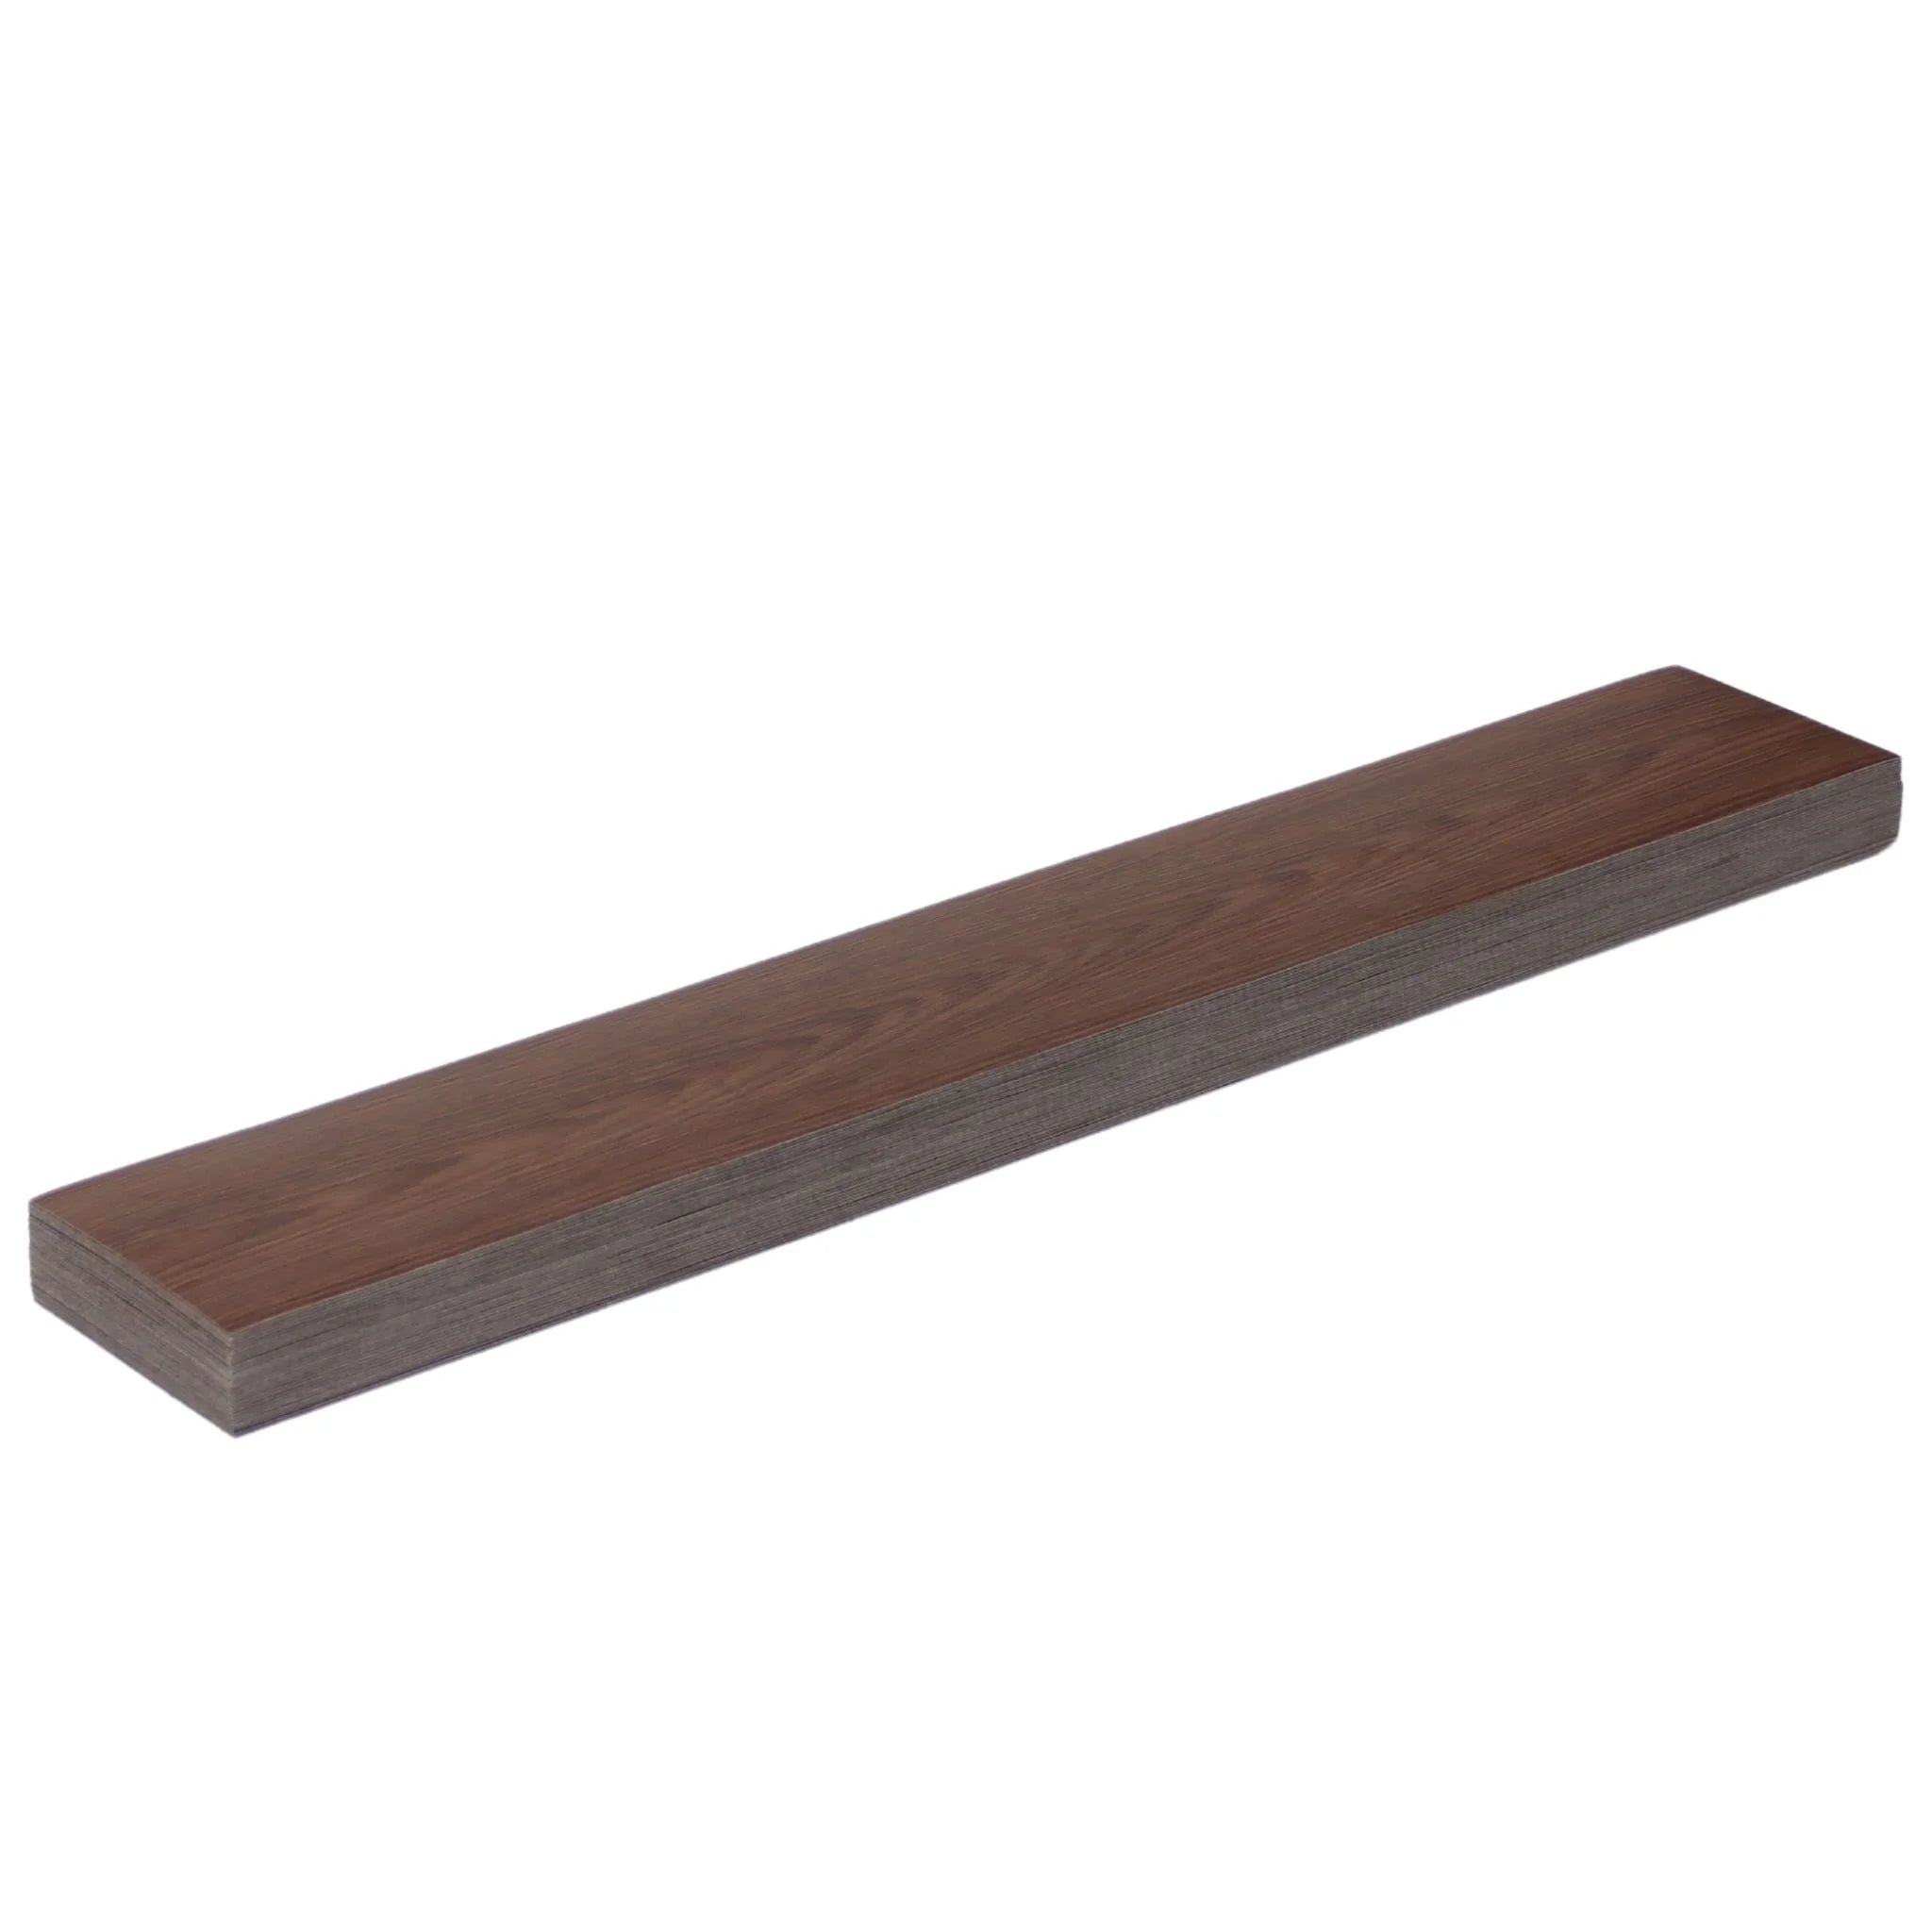 single wood-effect vinyl floor plank showcasing brown with dark edges